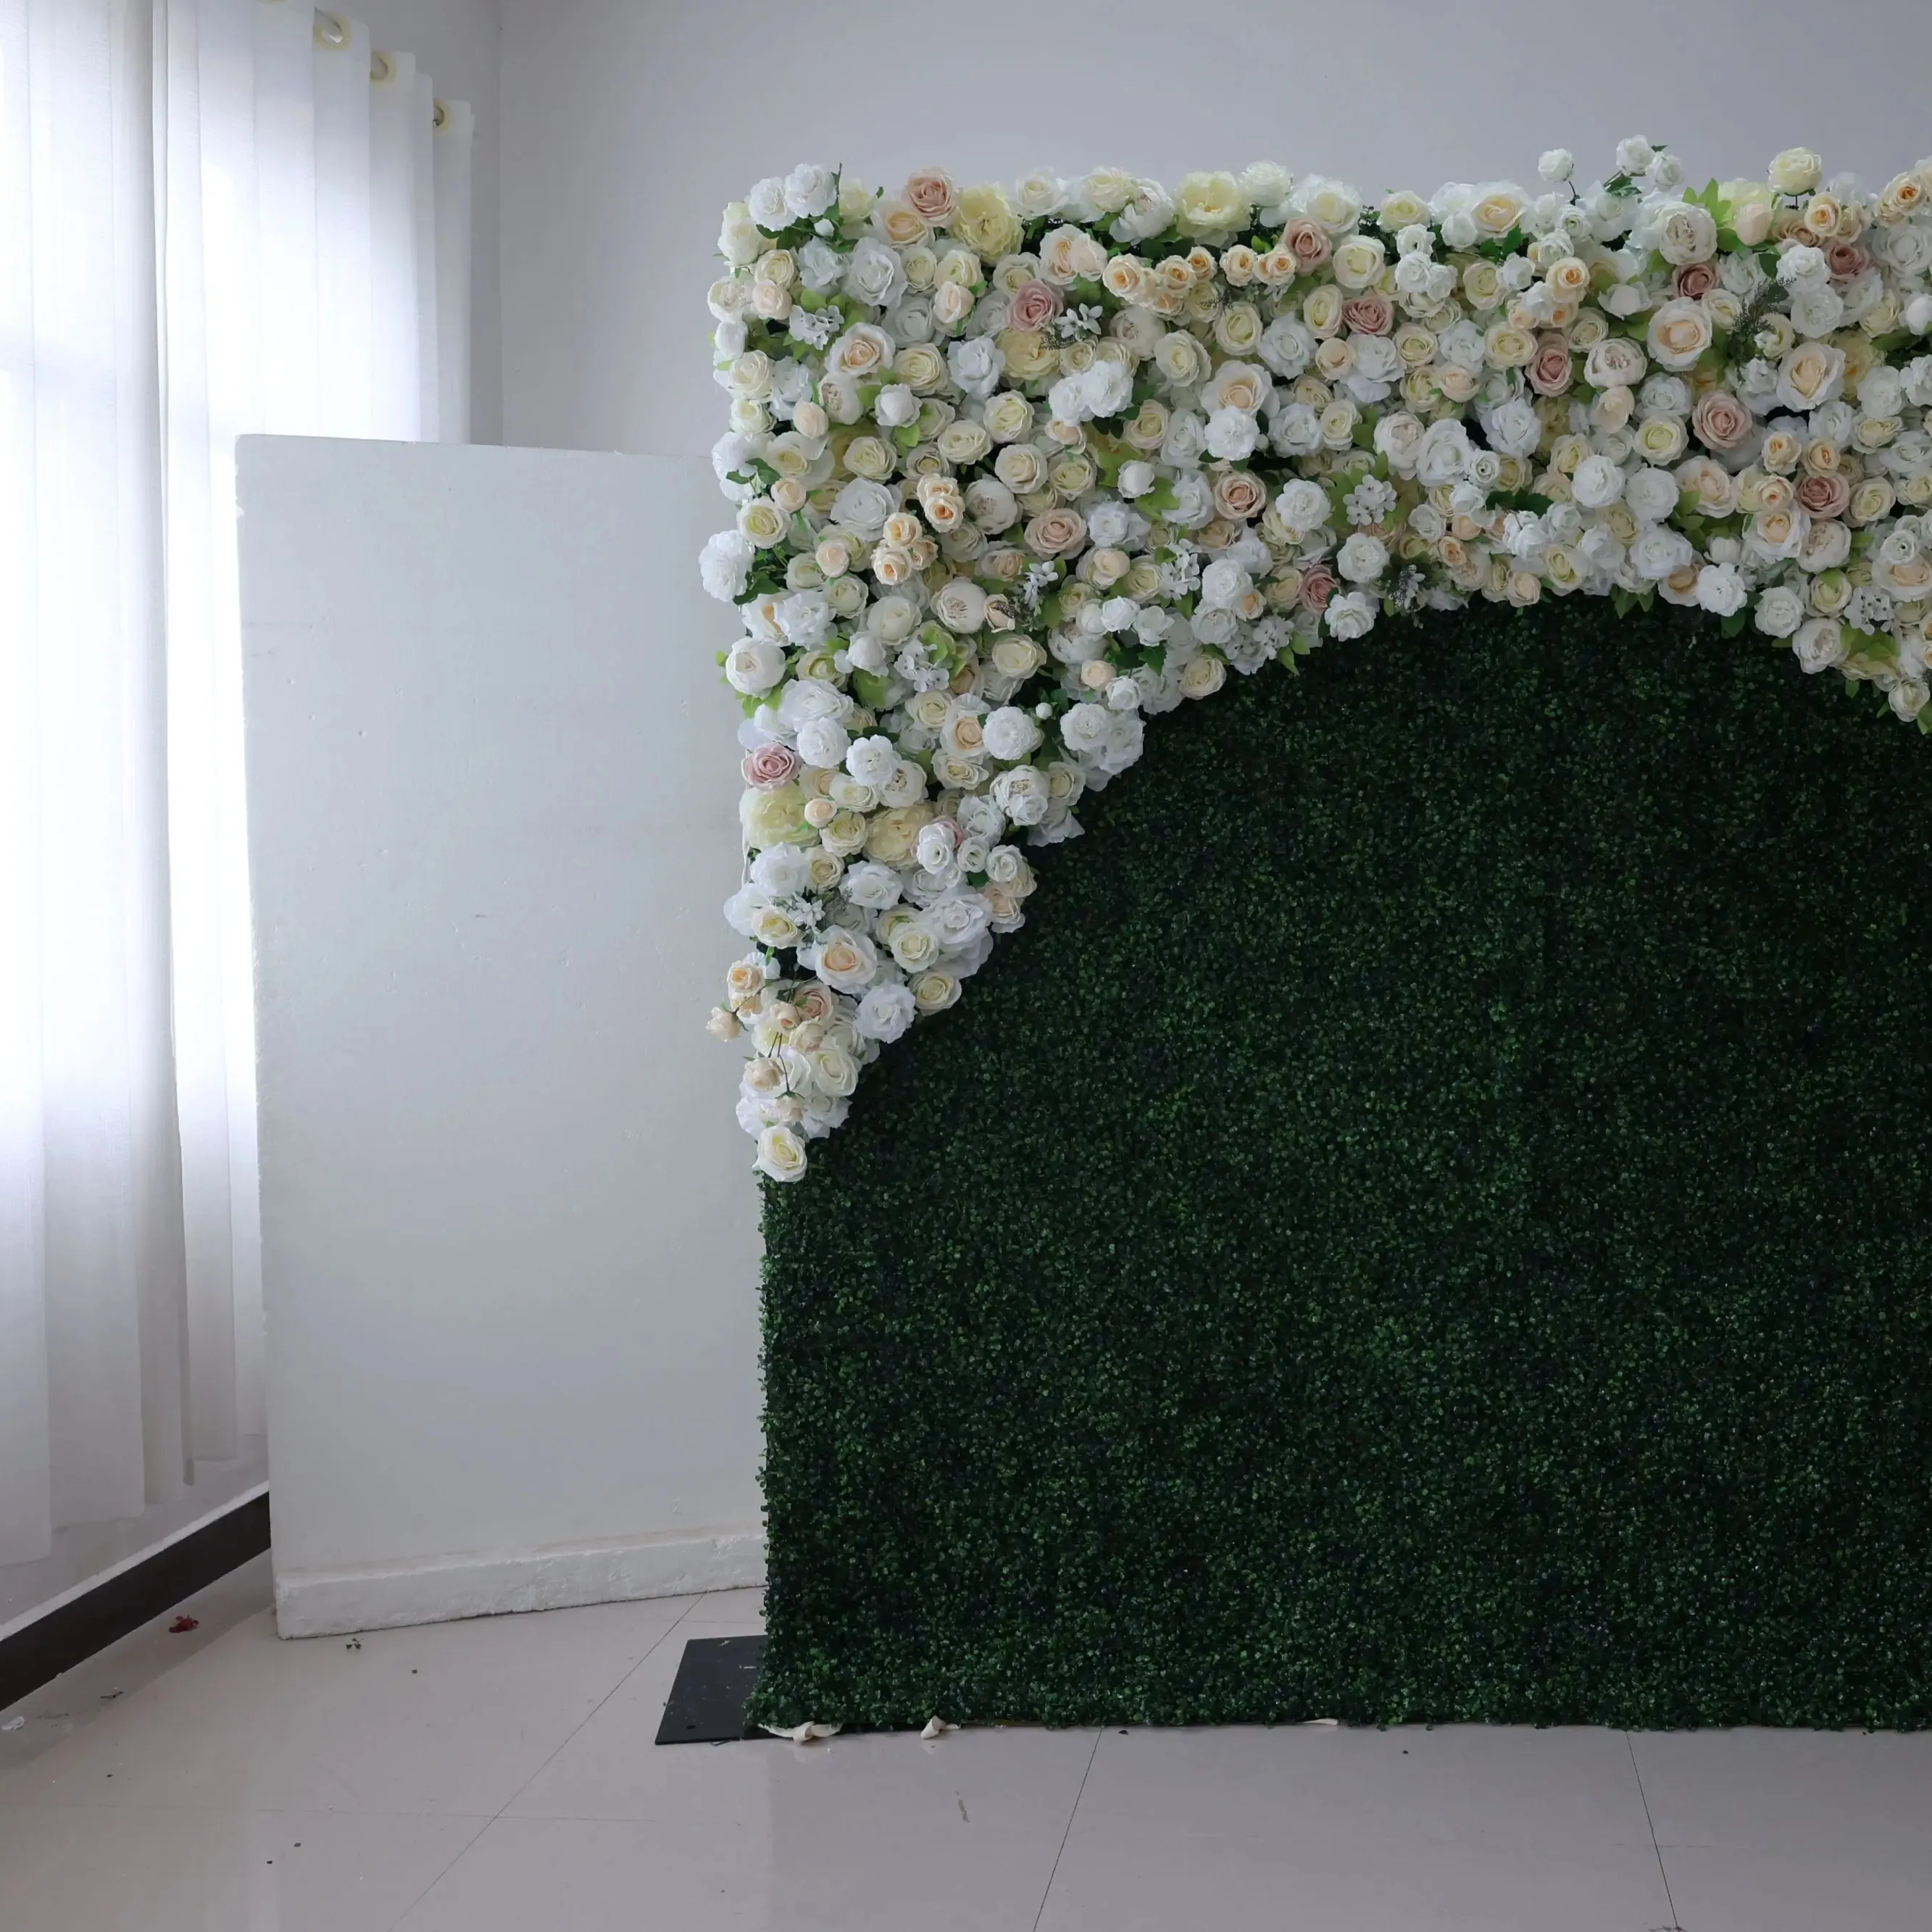 उच्च अंत कपड़े समर्थित शादी समारोह सिमुलेशन फूल दीवार